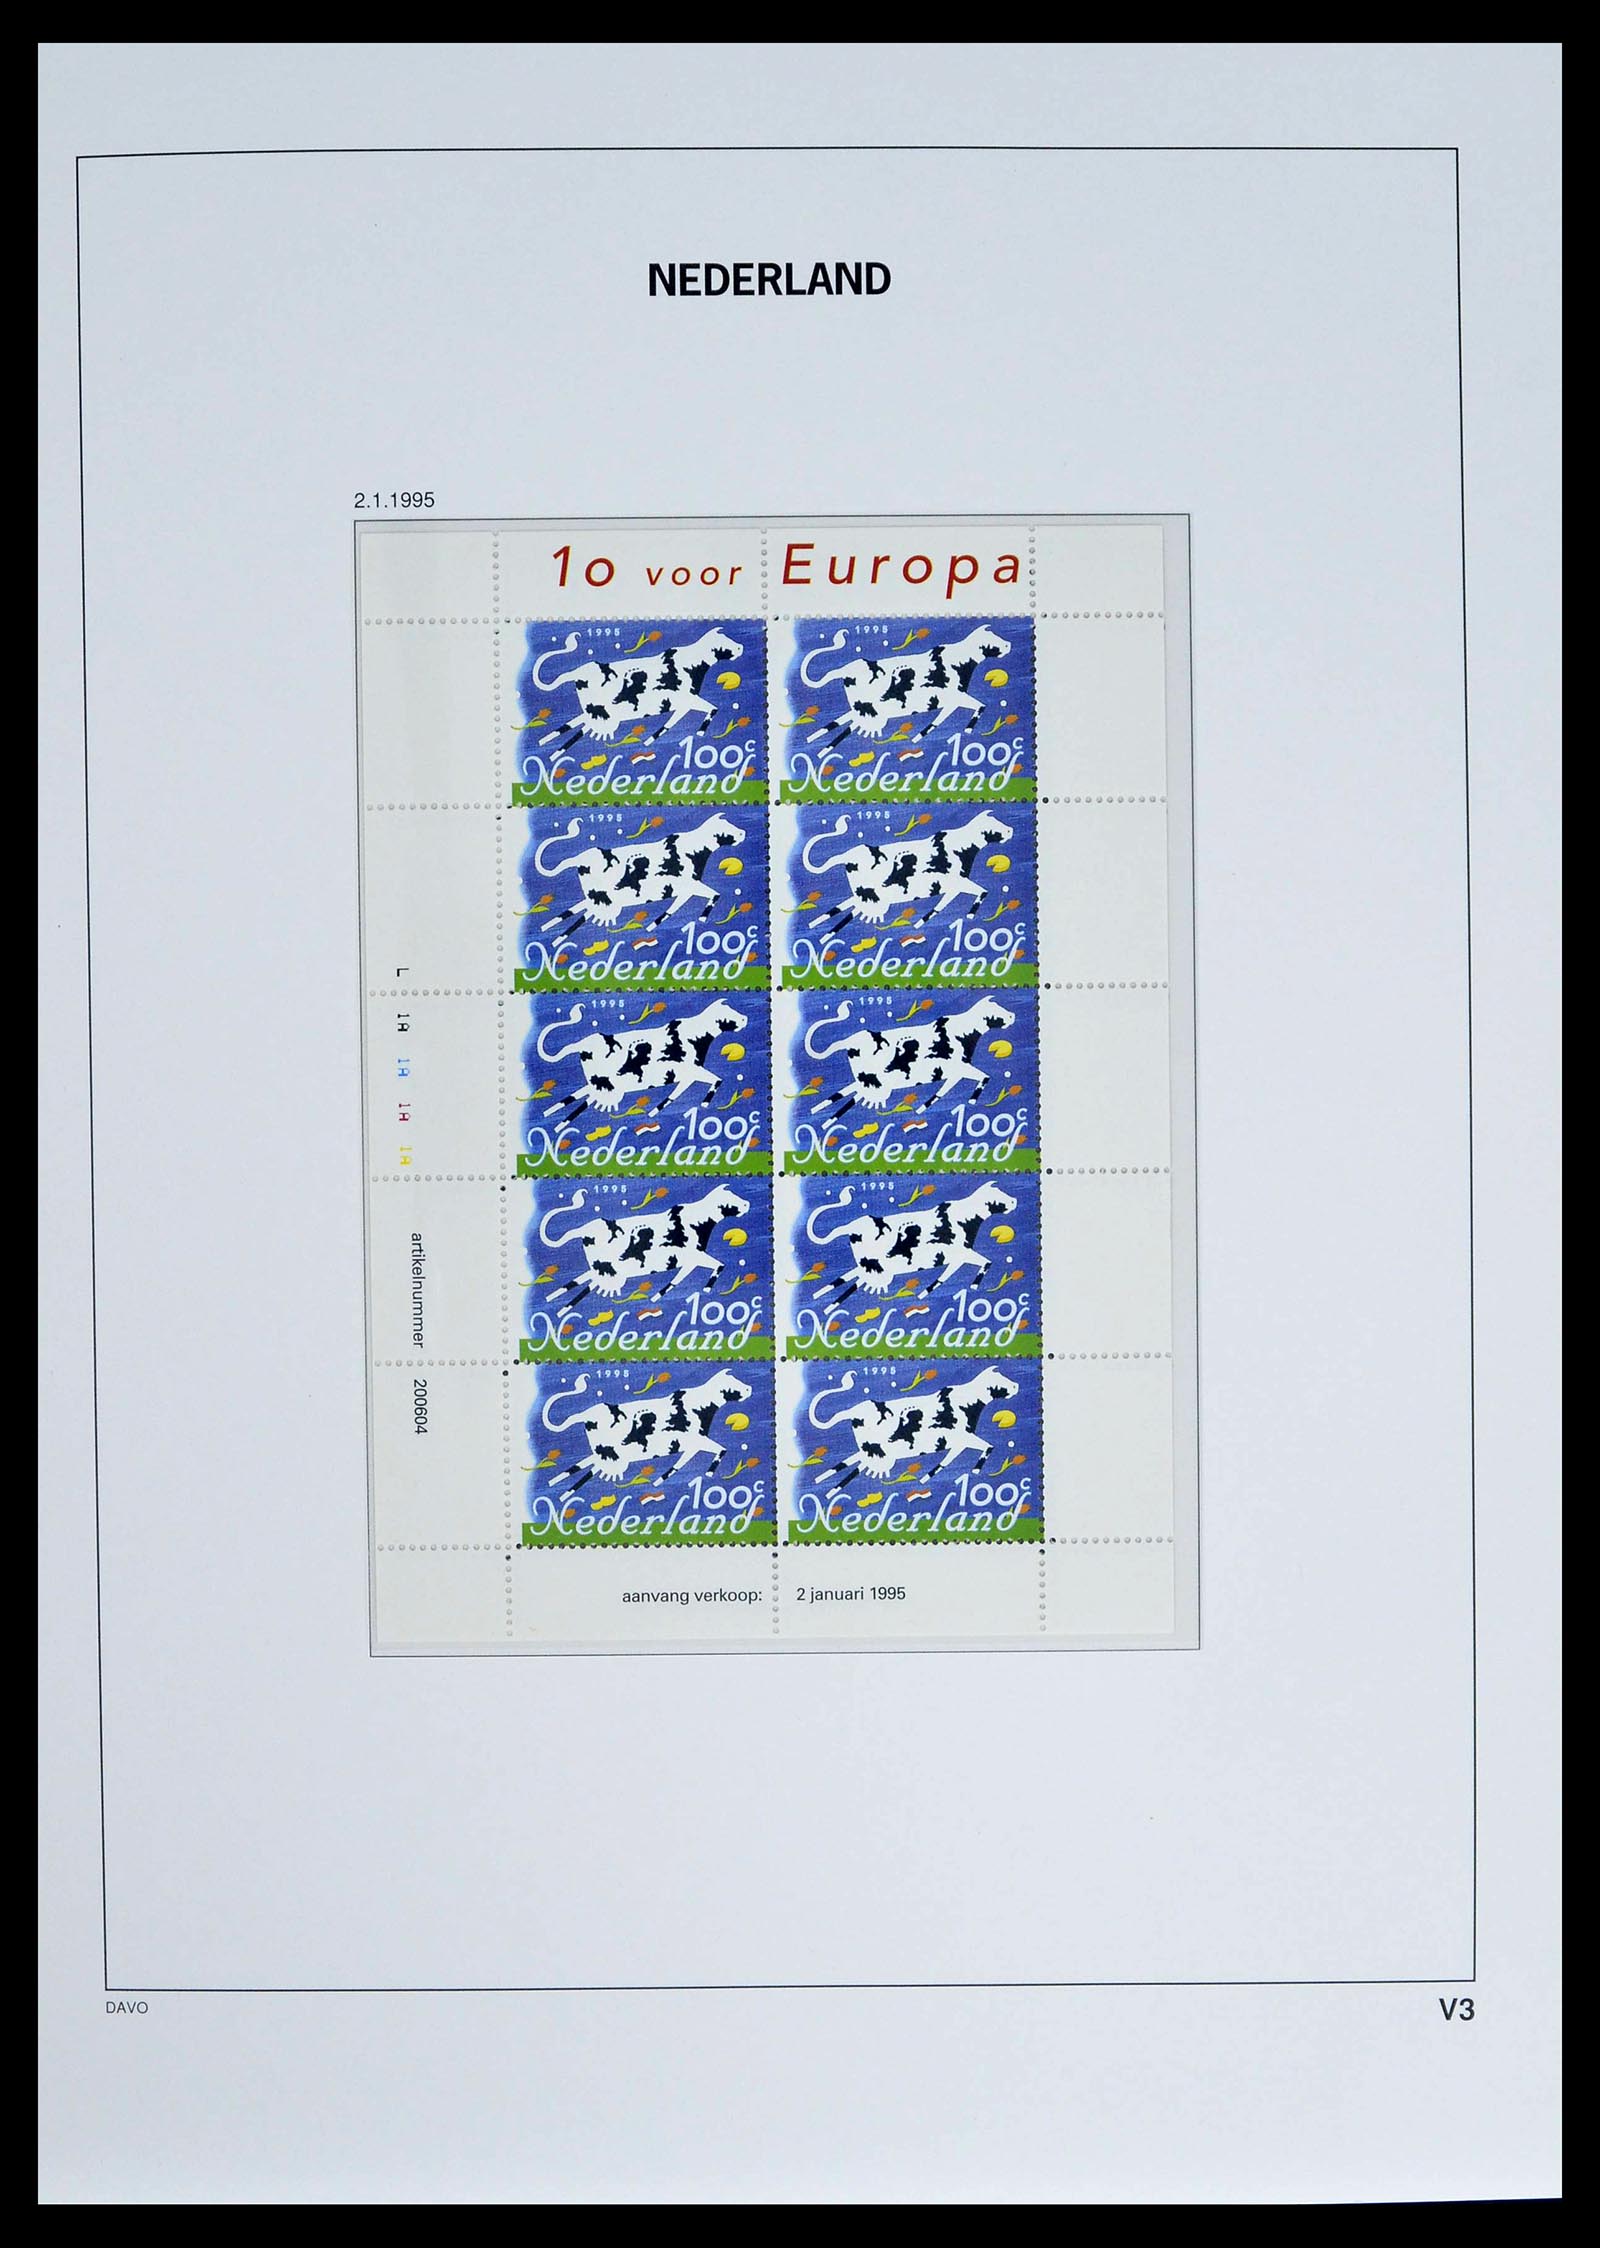 39134 0011 - Stamp collection 39134 Netherlands sheetlets 1992-2019!